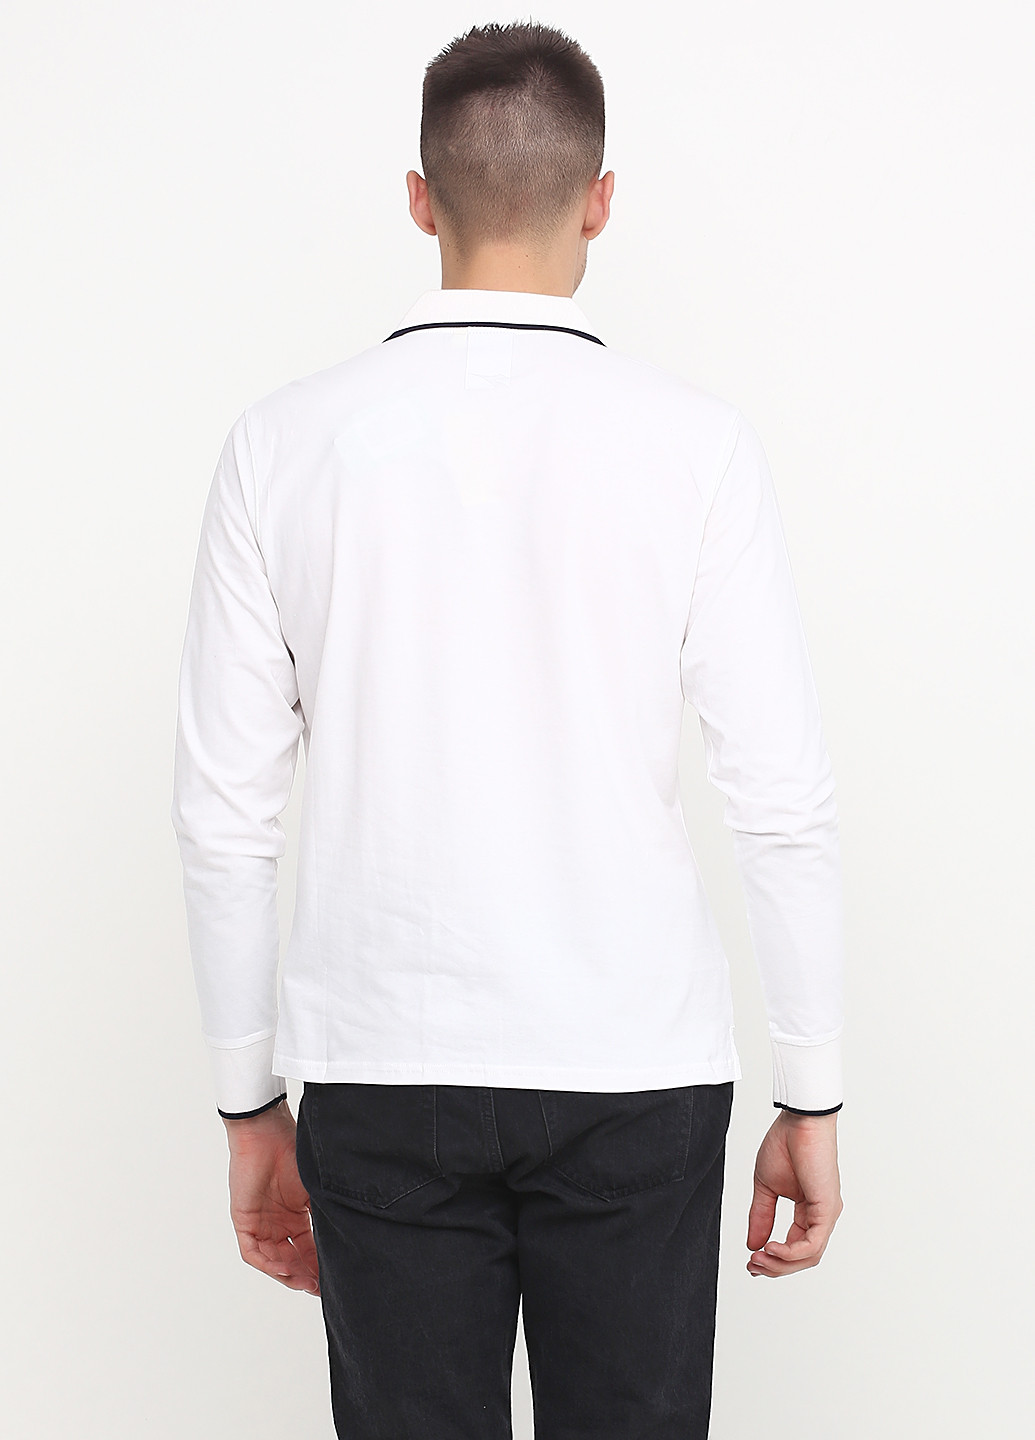 Белая футболка-поло для мужчин Diadora с надписью